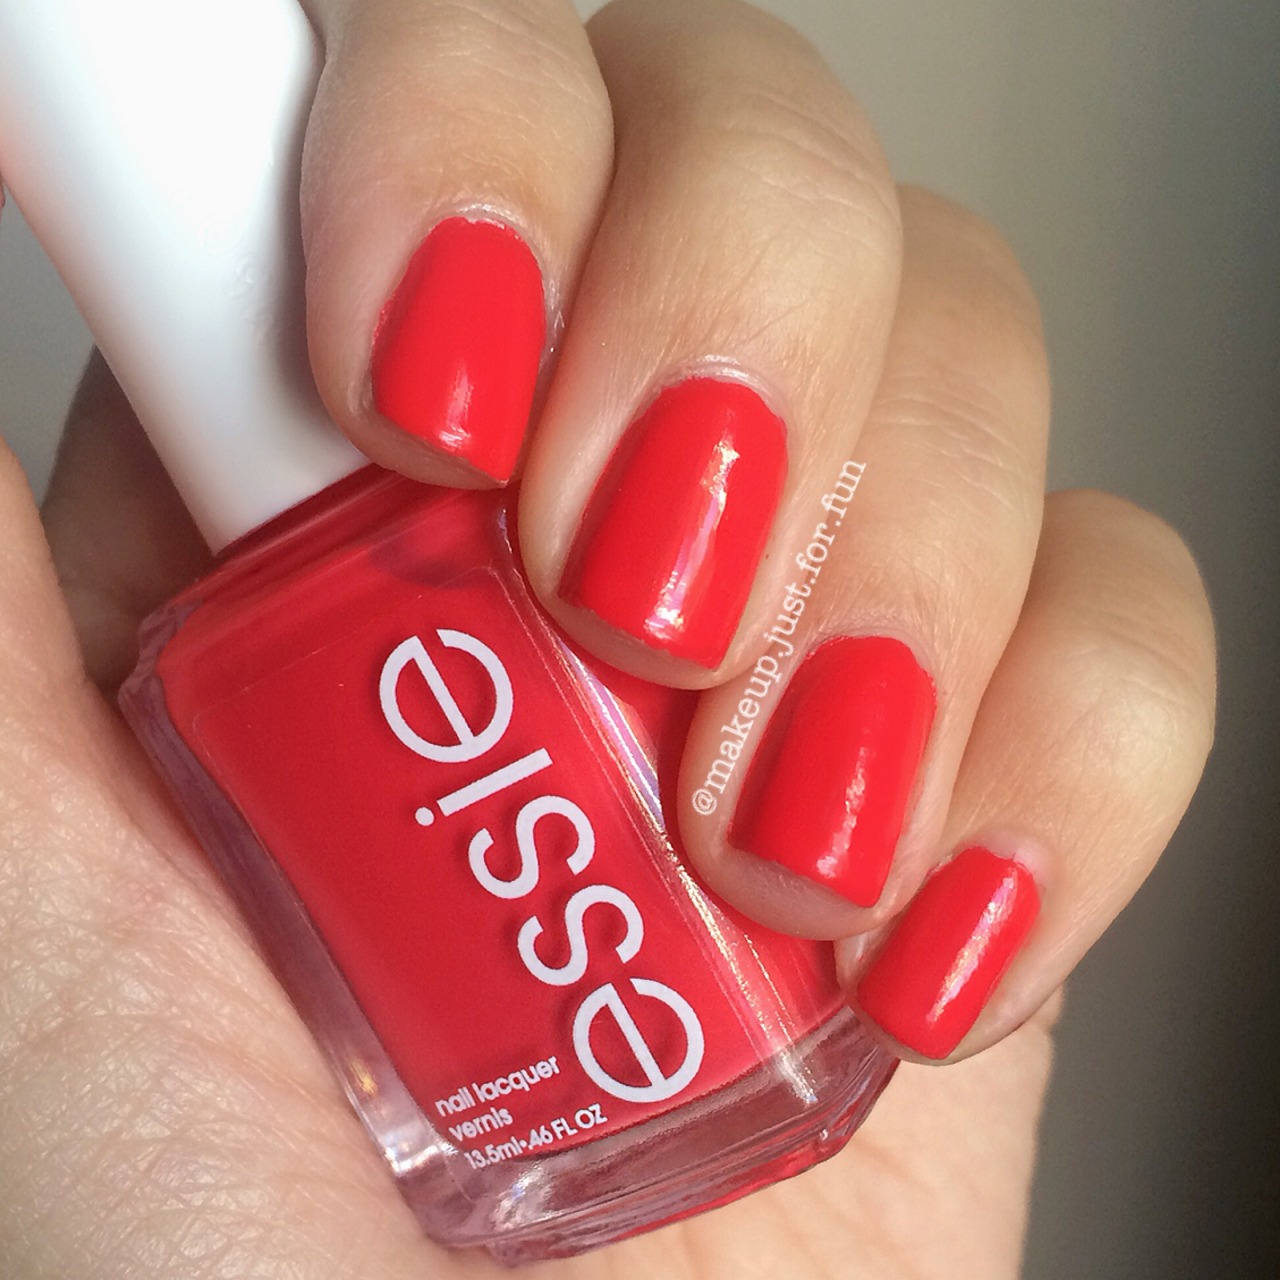 Essie polish in Sunset Sneak 🌅 @essie